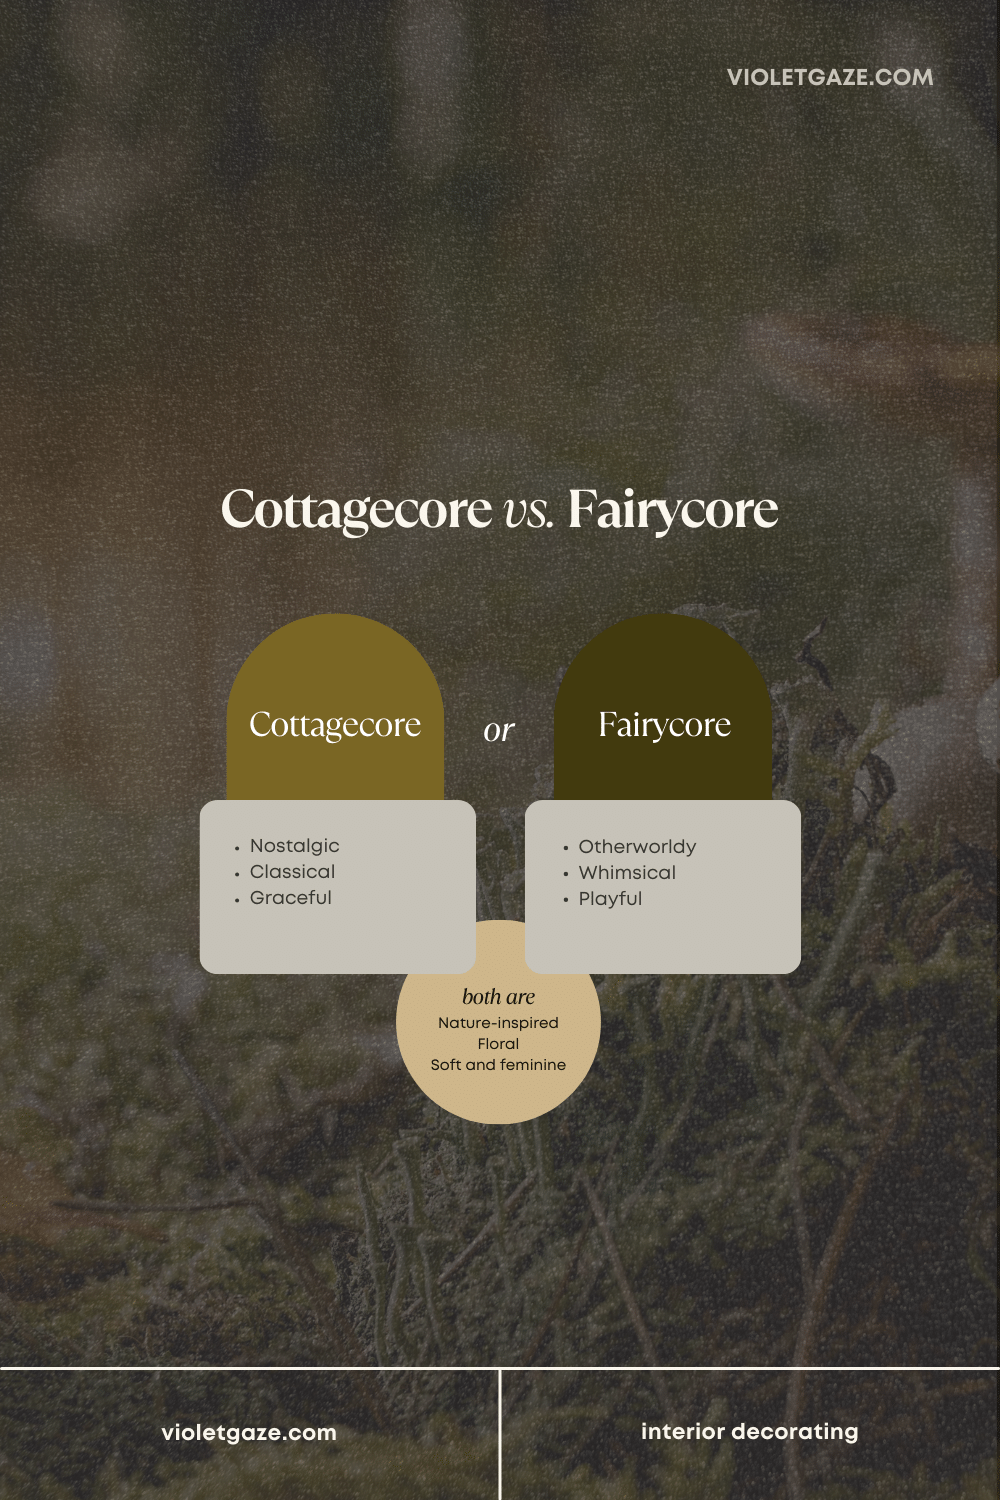 cottagecore vs fairycore comparison
